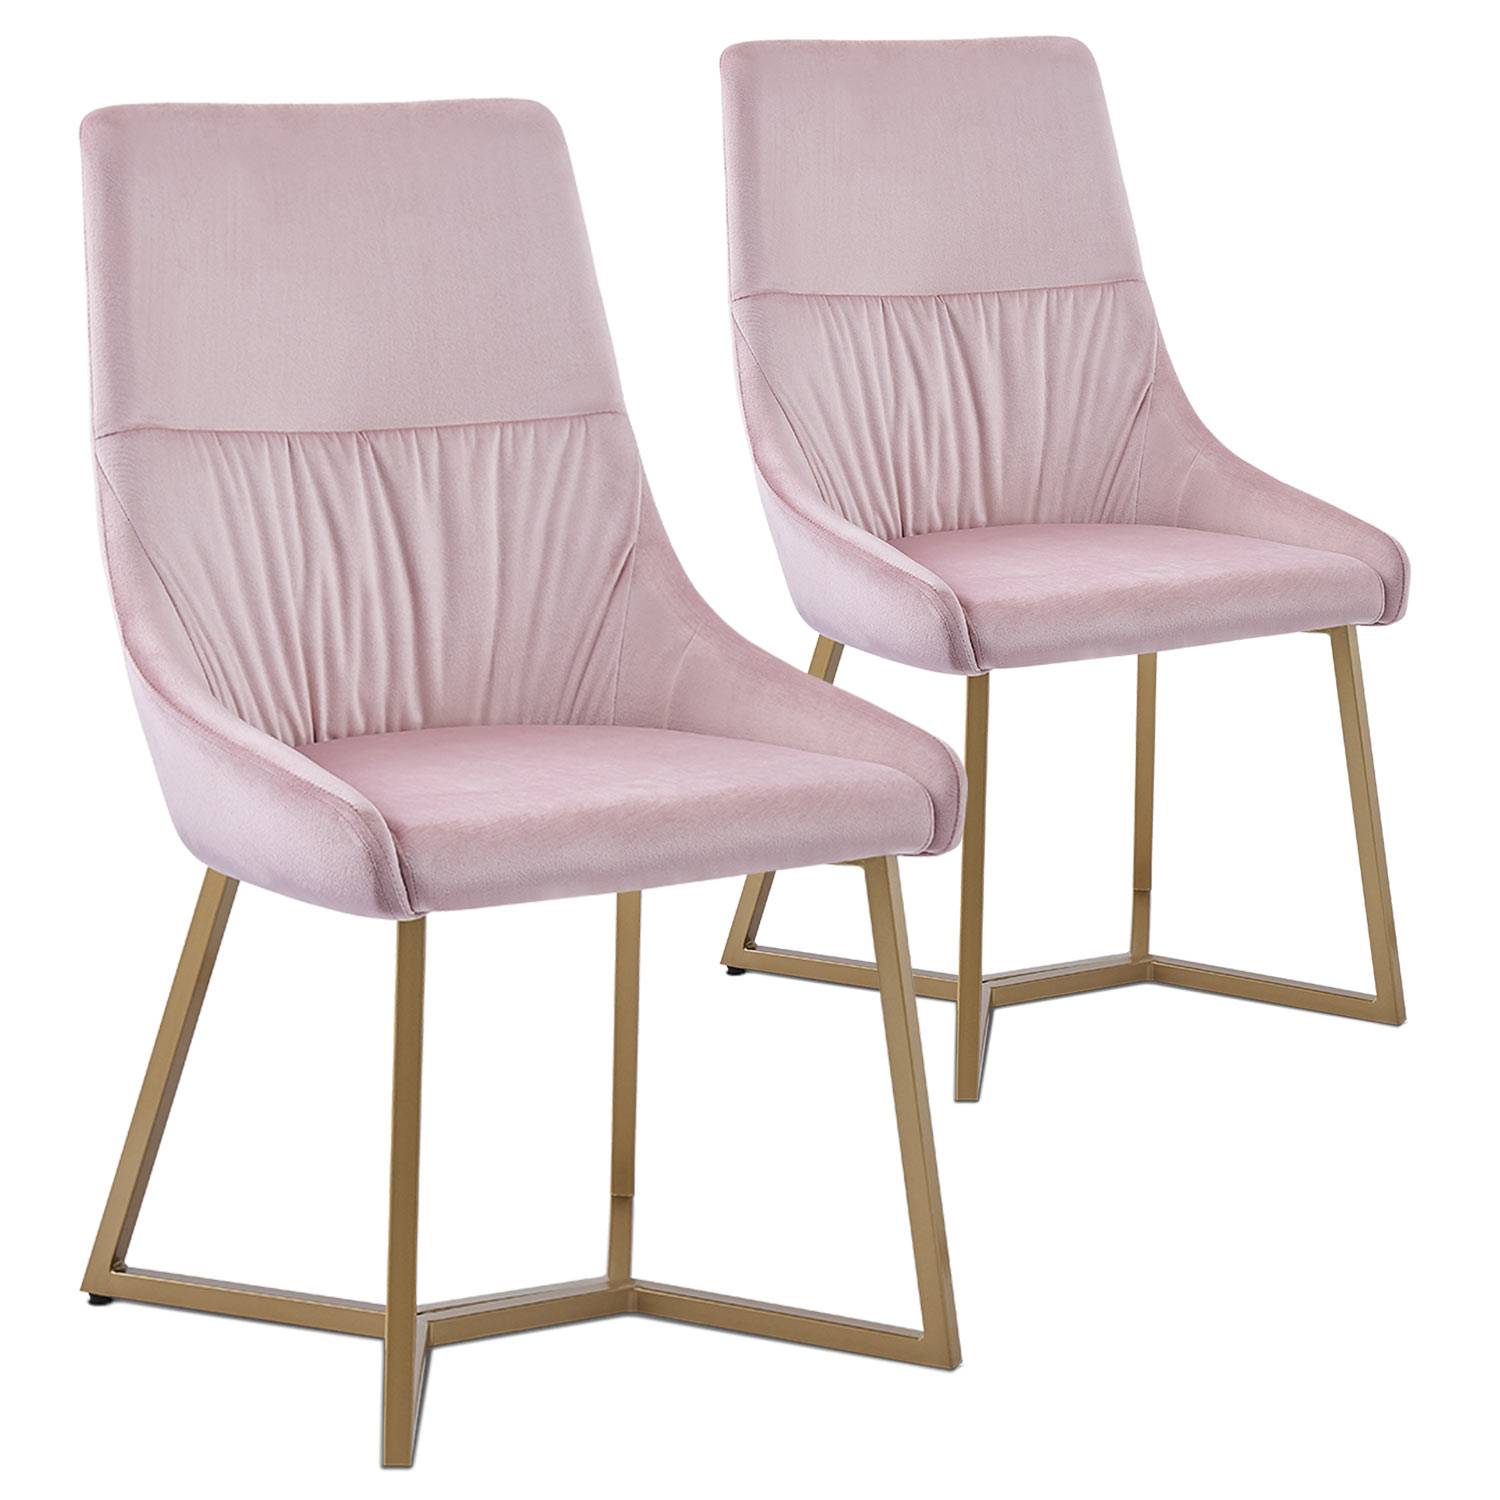 Lote de 2 sillas acolchadas Foldie de terciopelo rosa